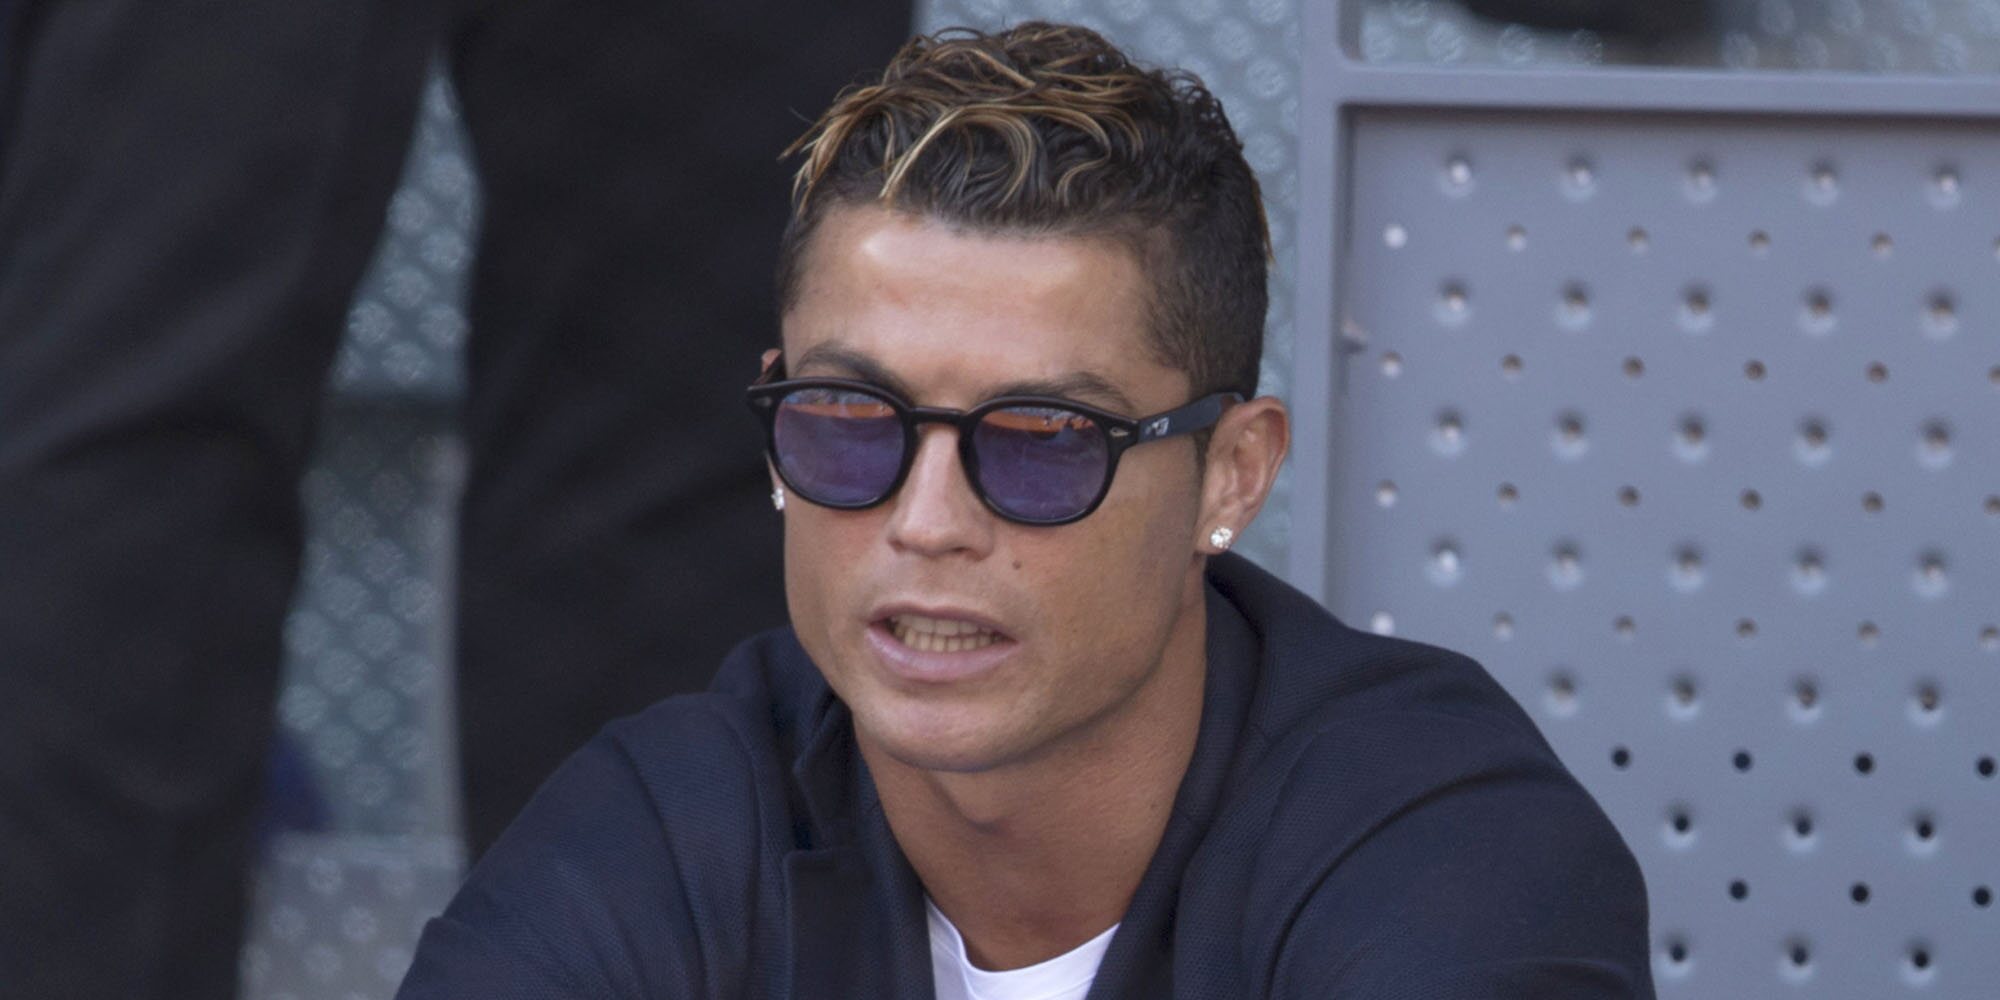 Una agente de viajes estafó cerca de 300.000 euros a Cristiano Ronaldo